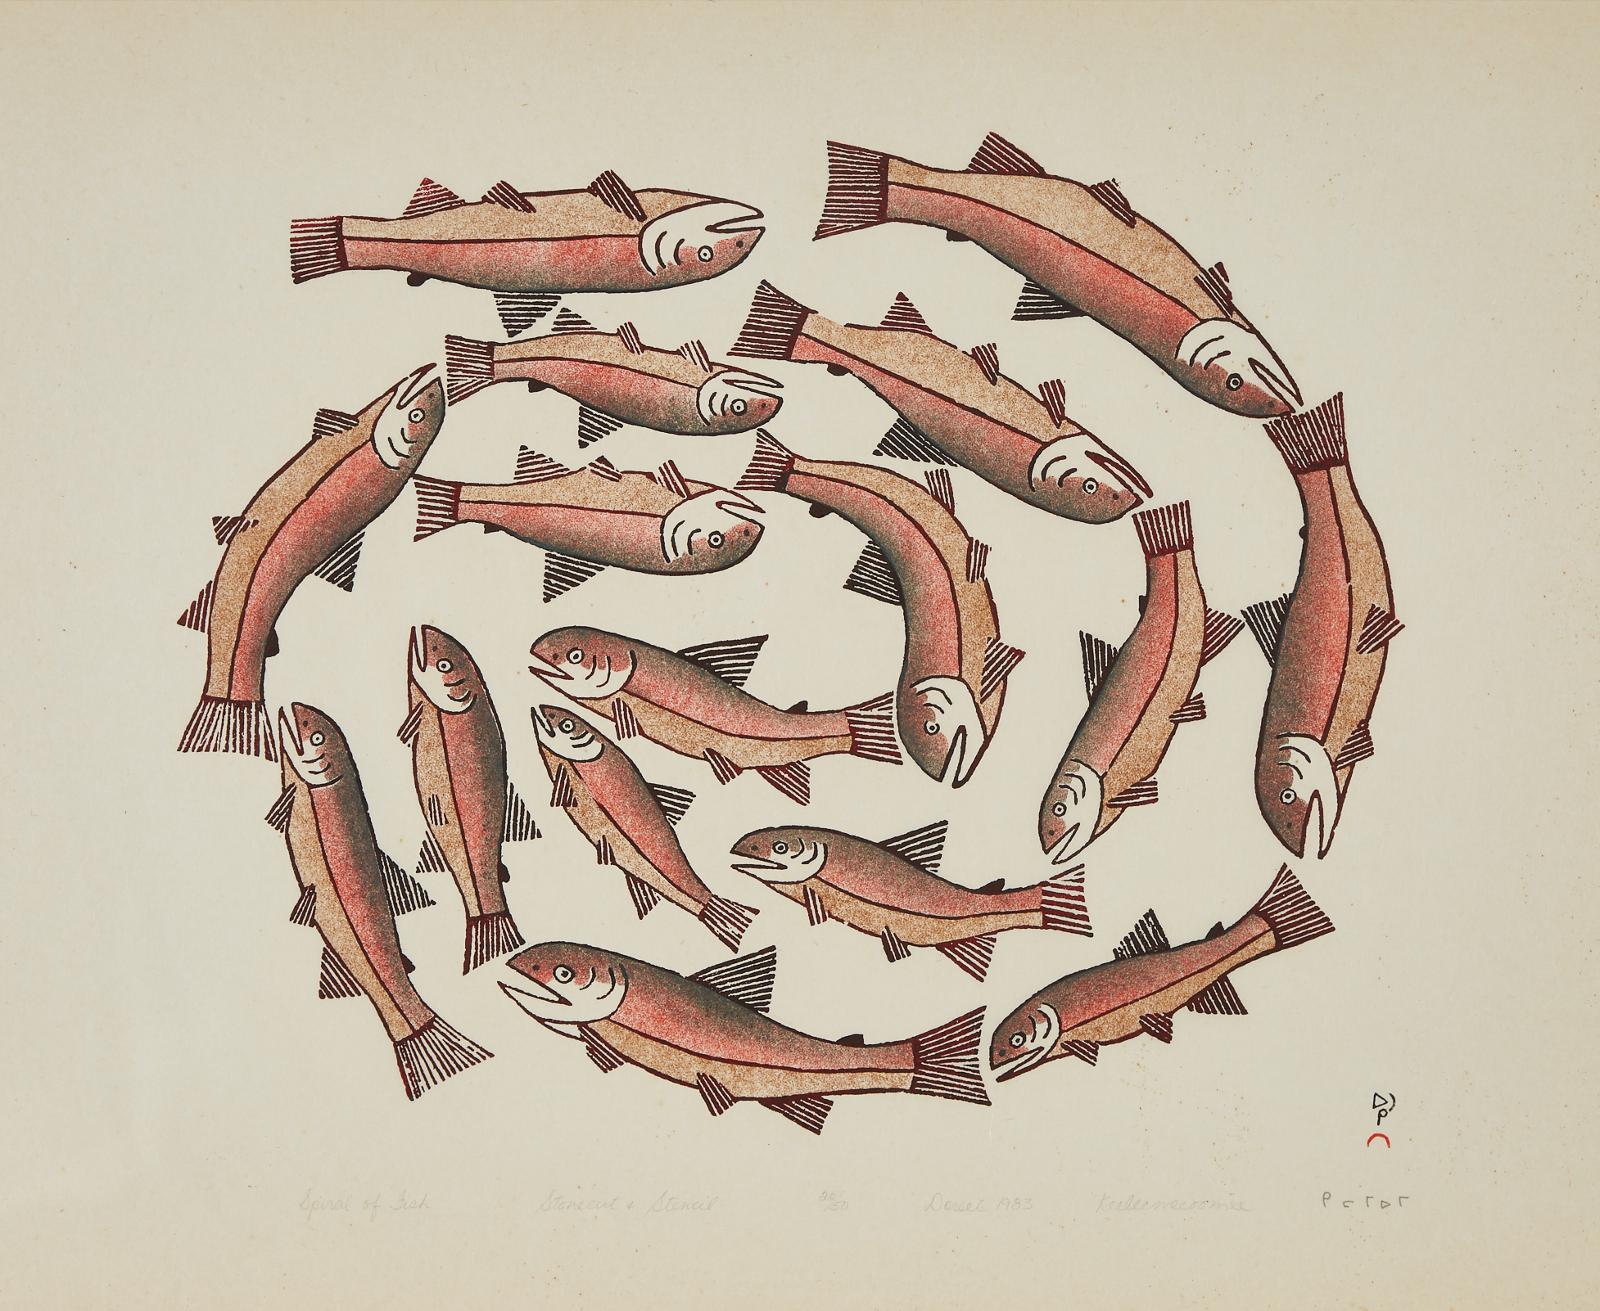 Keeleemeeoomee Samualie (1919-1983) - Spiral Of Fish